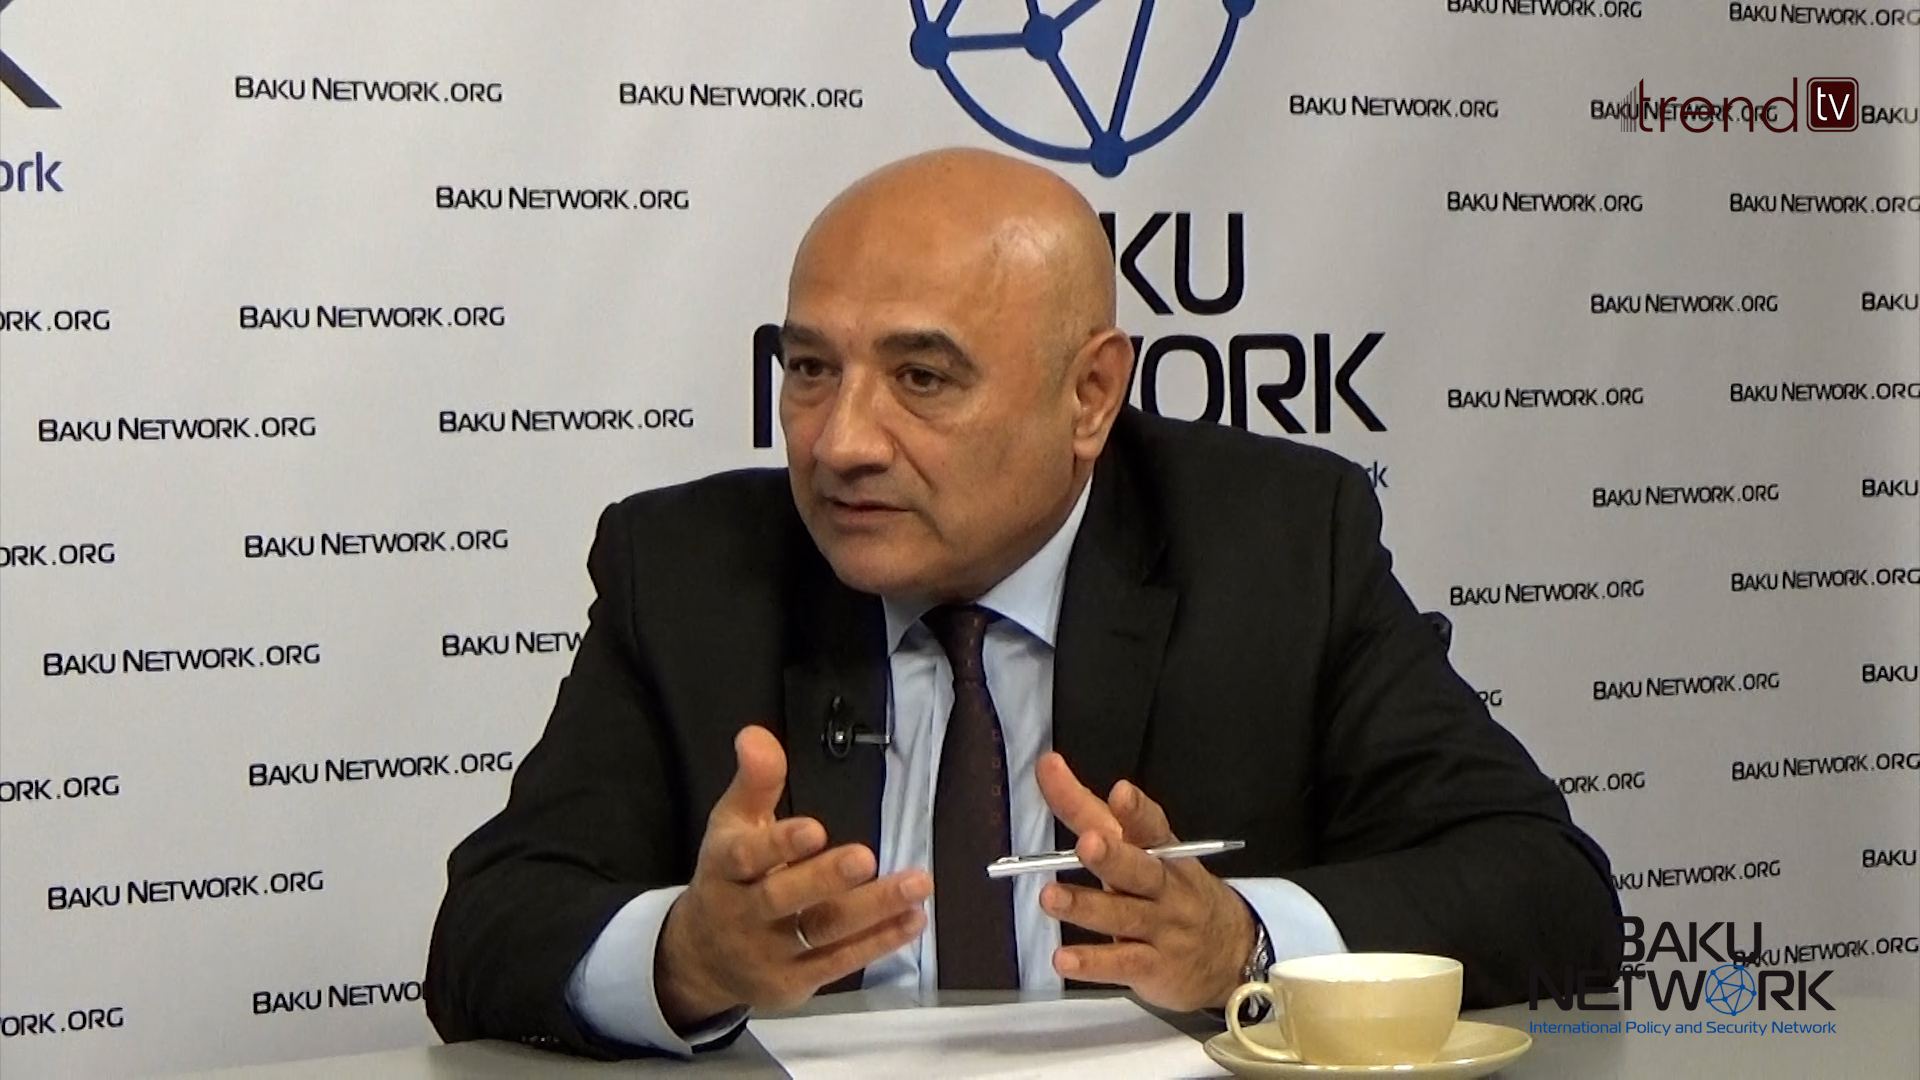 В рамках видеопроекта "Диалог с Тофиком Аббасовым" обсуждены вопросы реинтеграции армянского меньшинства в Карабахе (ФОТО/ВИДЕО)